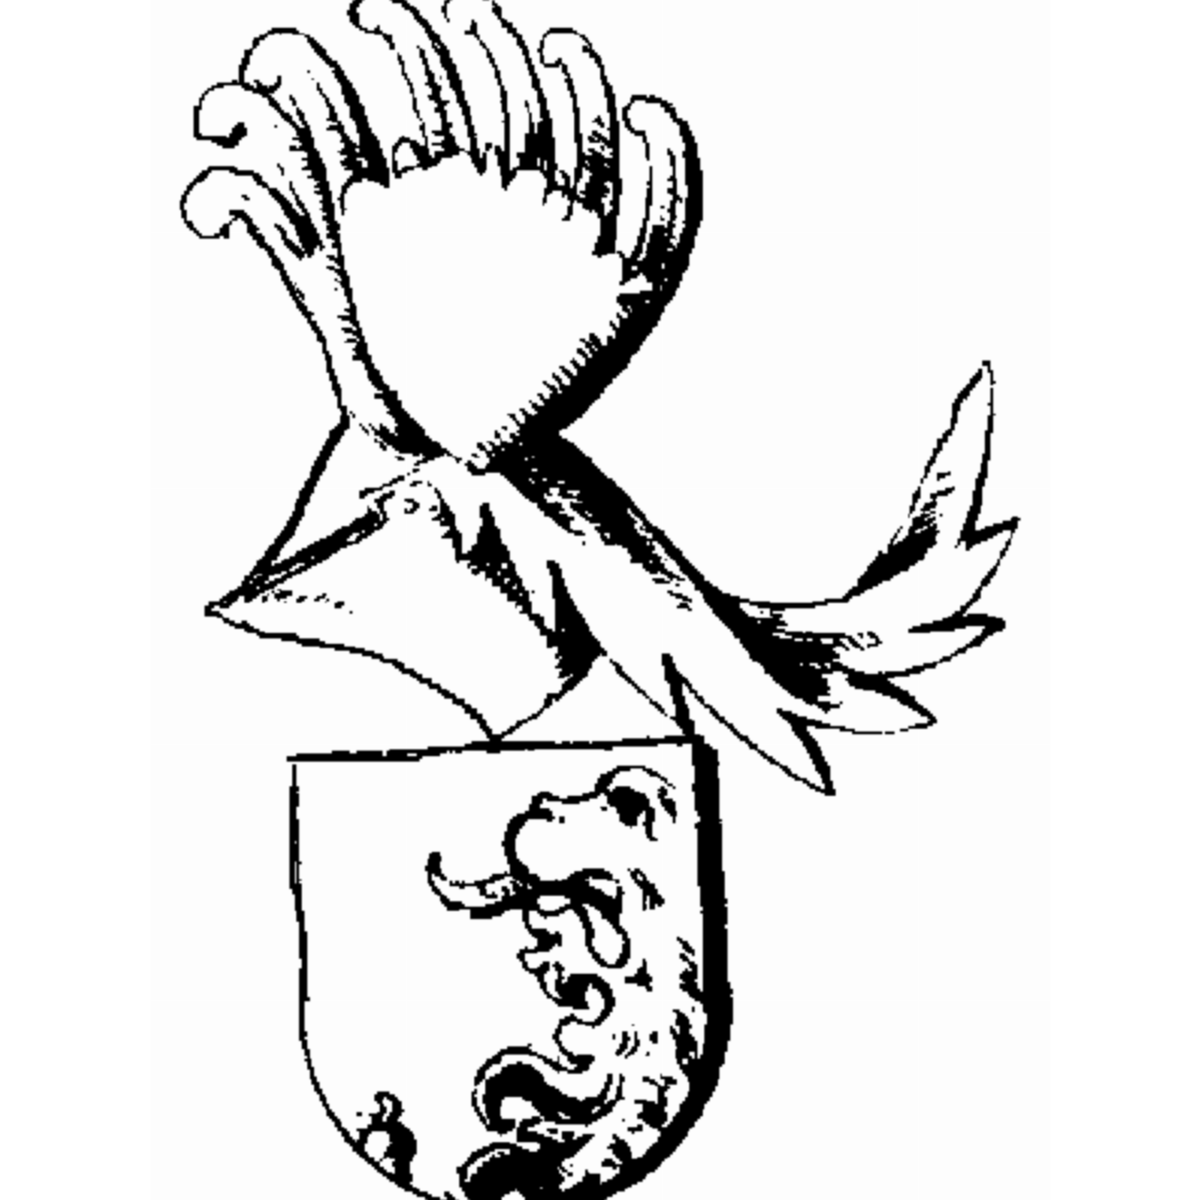 Wappen der Familie Tschurtschenthaler